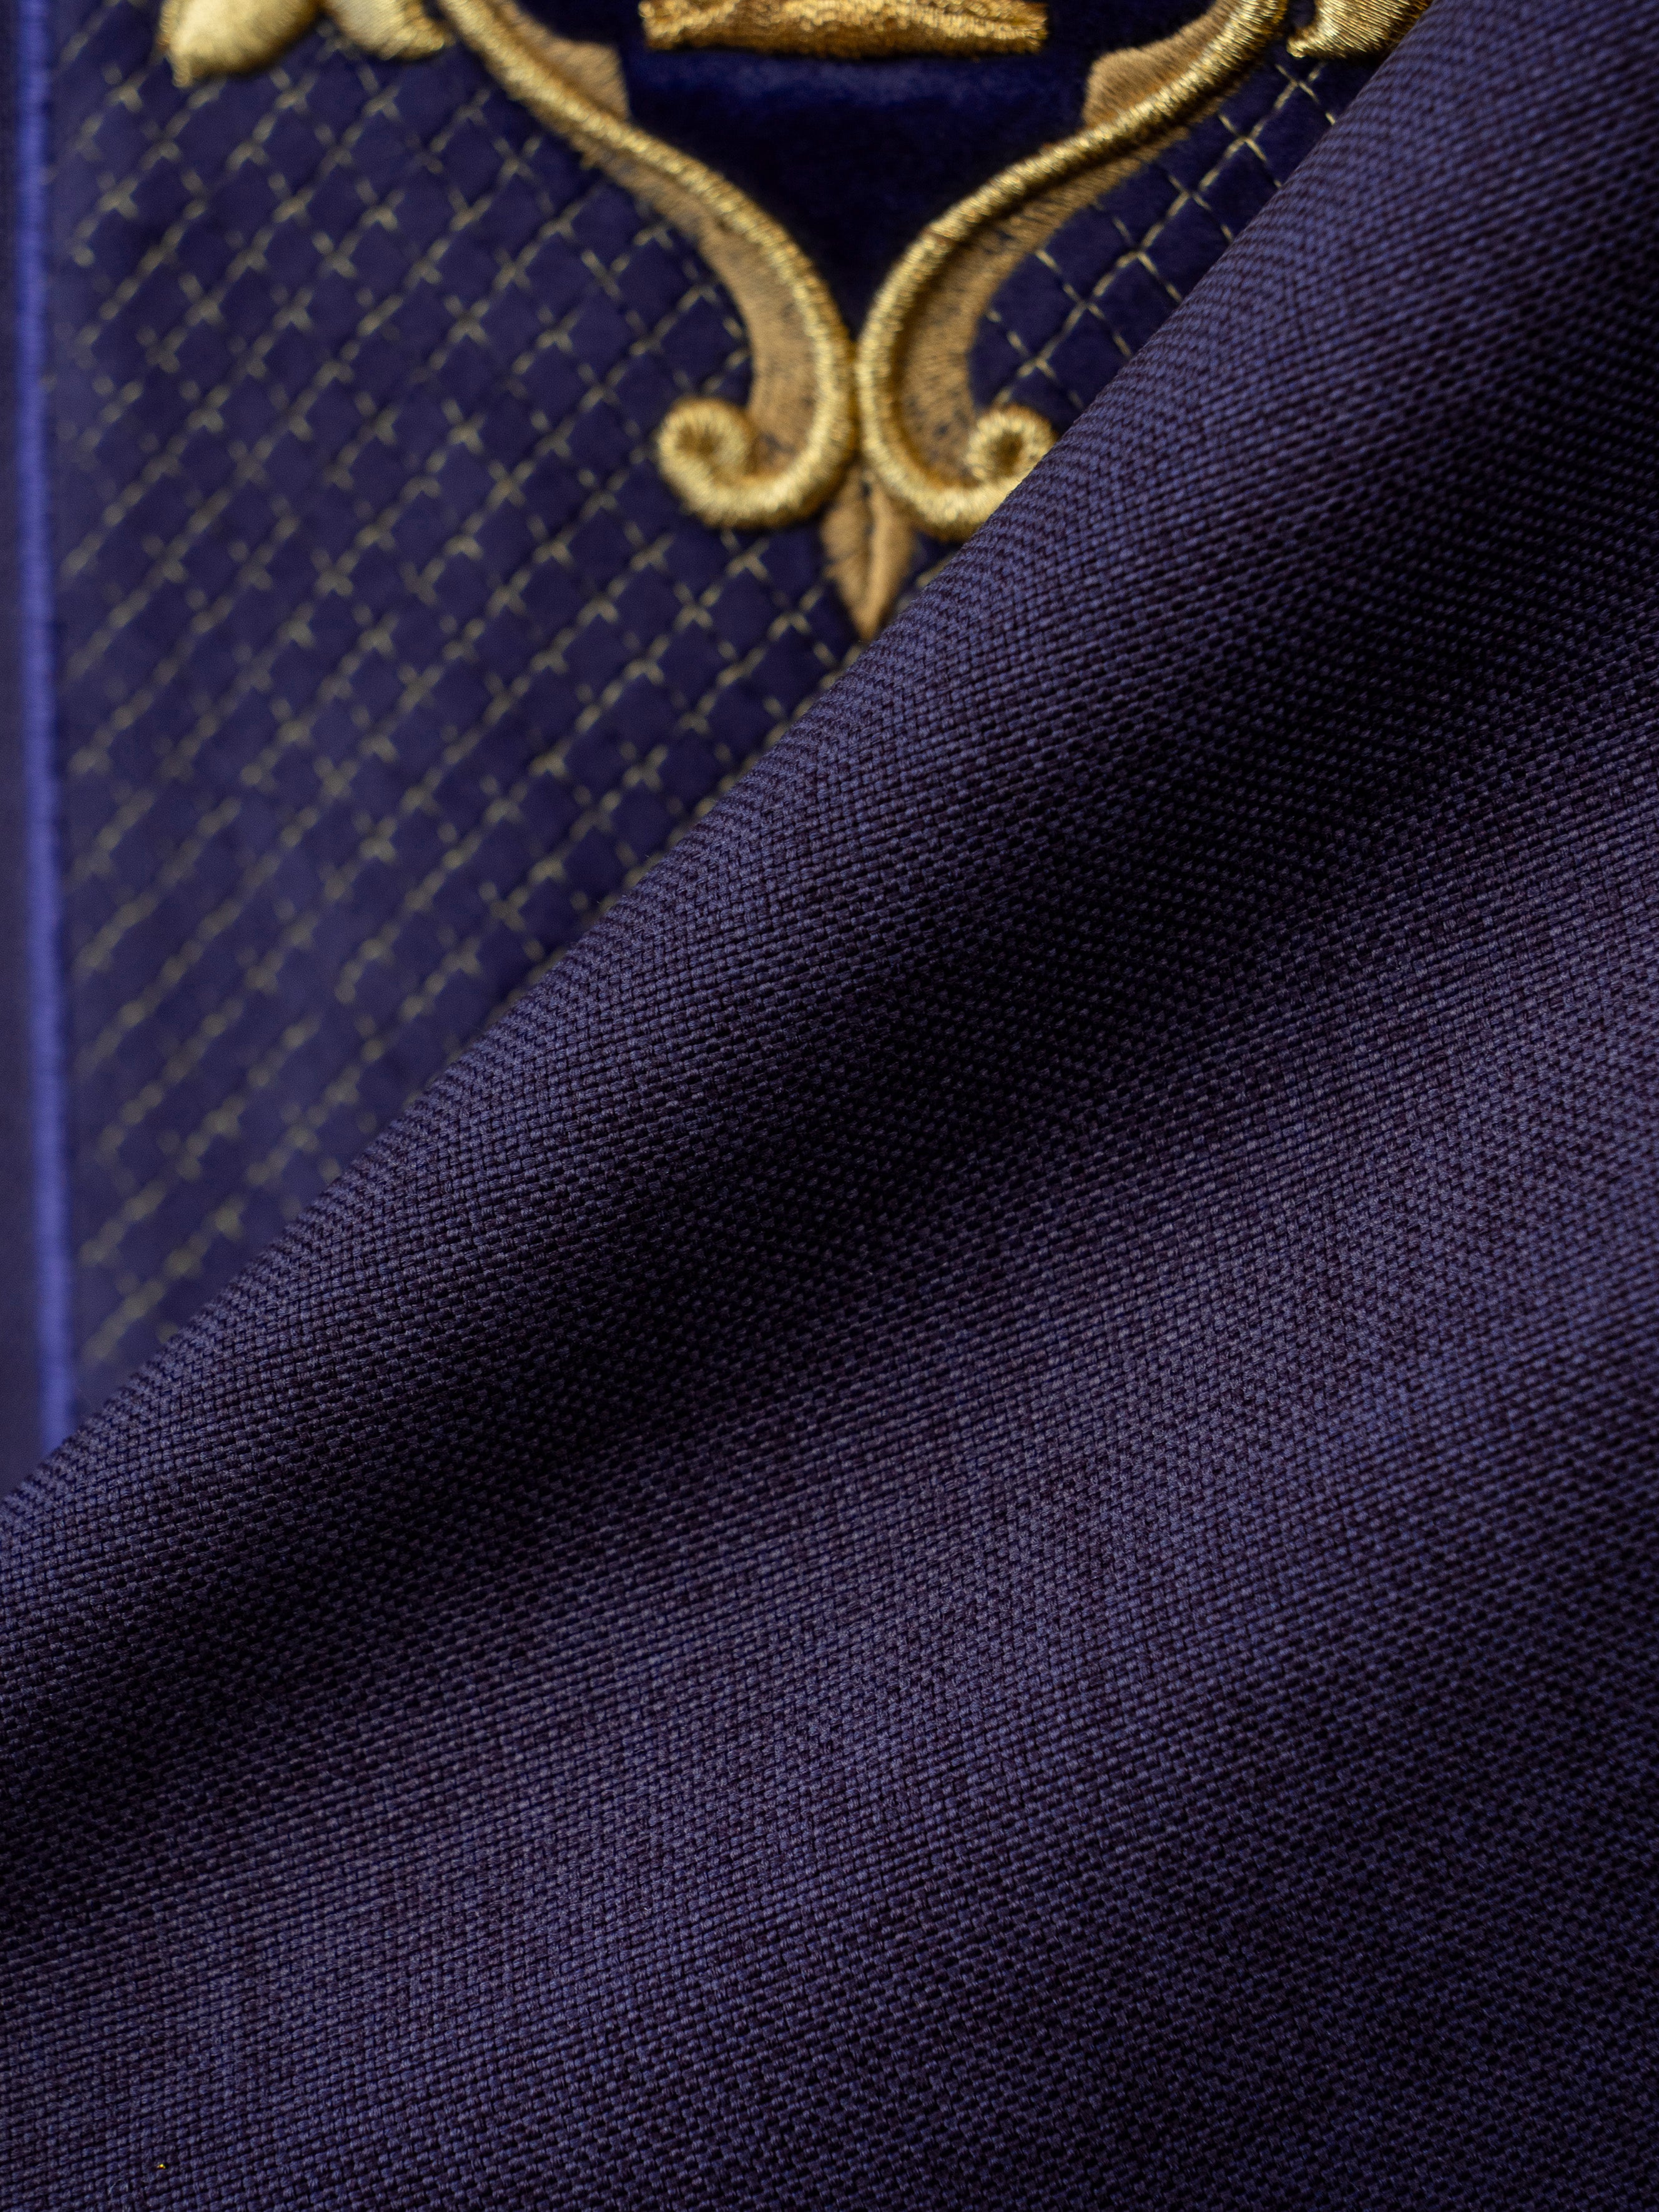 Ornat haftowany na aksamicie z symbolem Krzyż Fioletowy